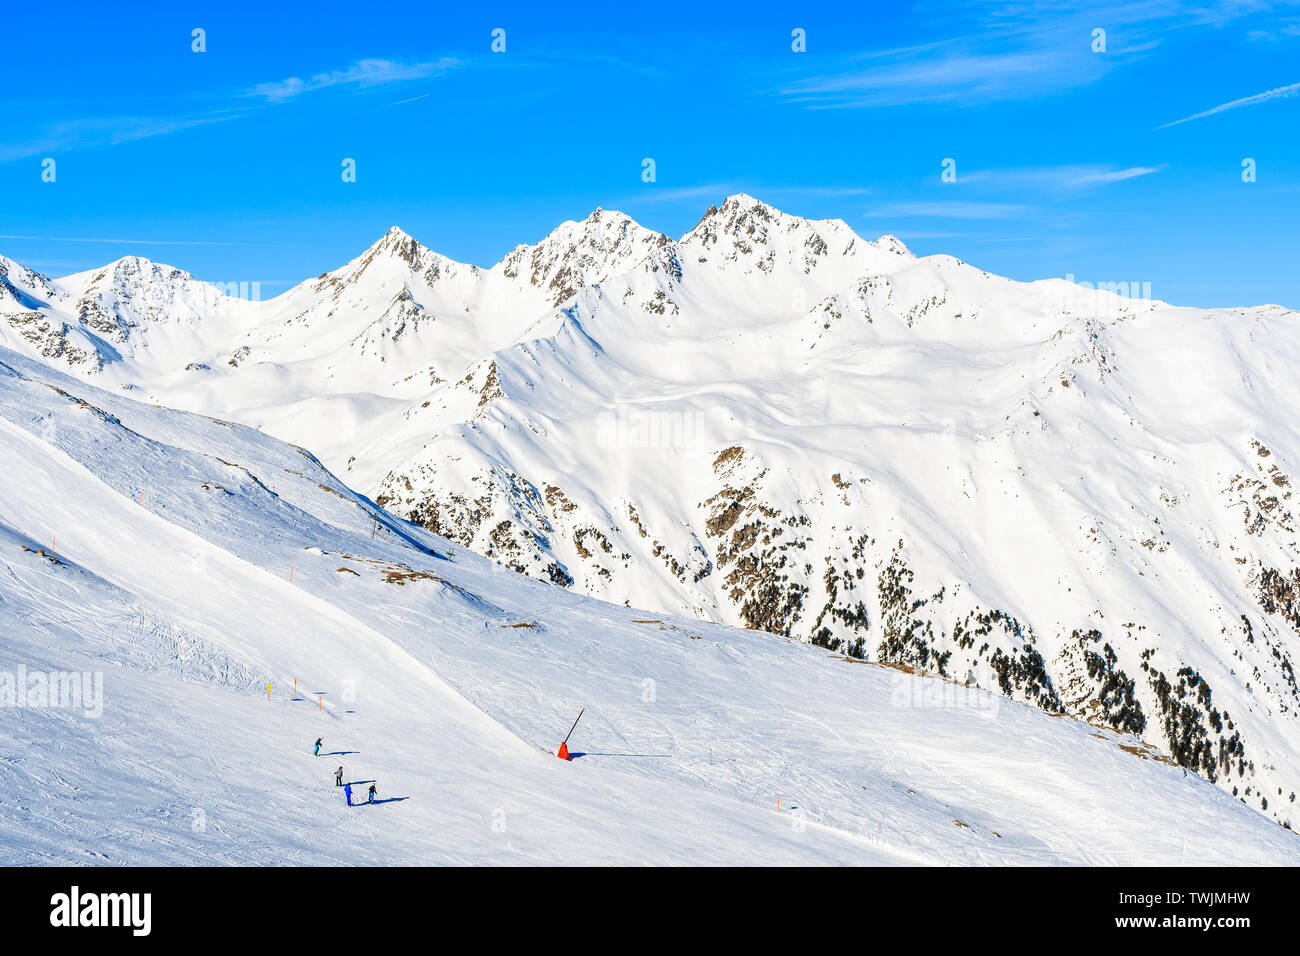 Vista delle piste da sci e fantastiche Alpi austriache montagne in bella neve invernale, Serfaus Fiss, in posizione Ladis, Tirolo, Austria Foto Stock